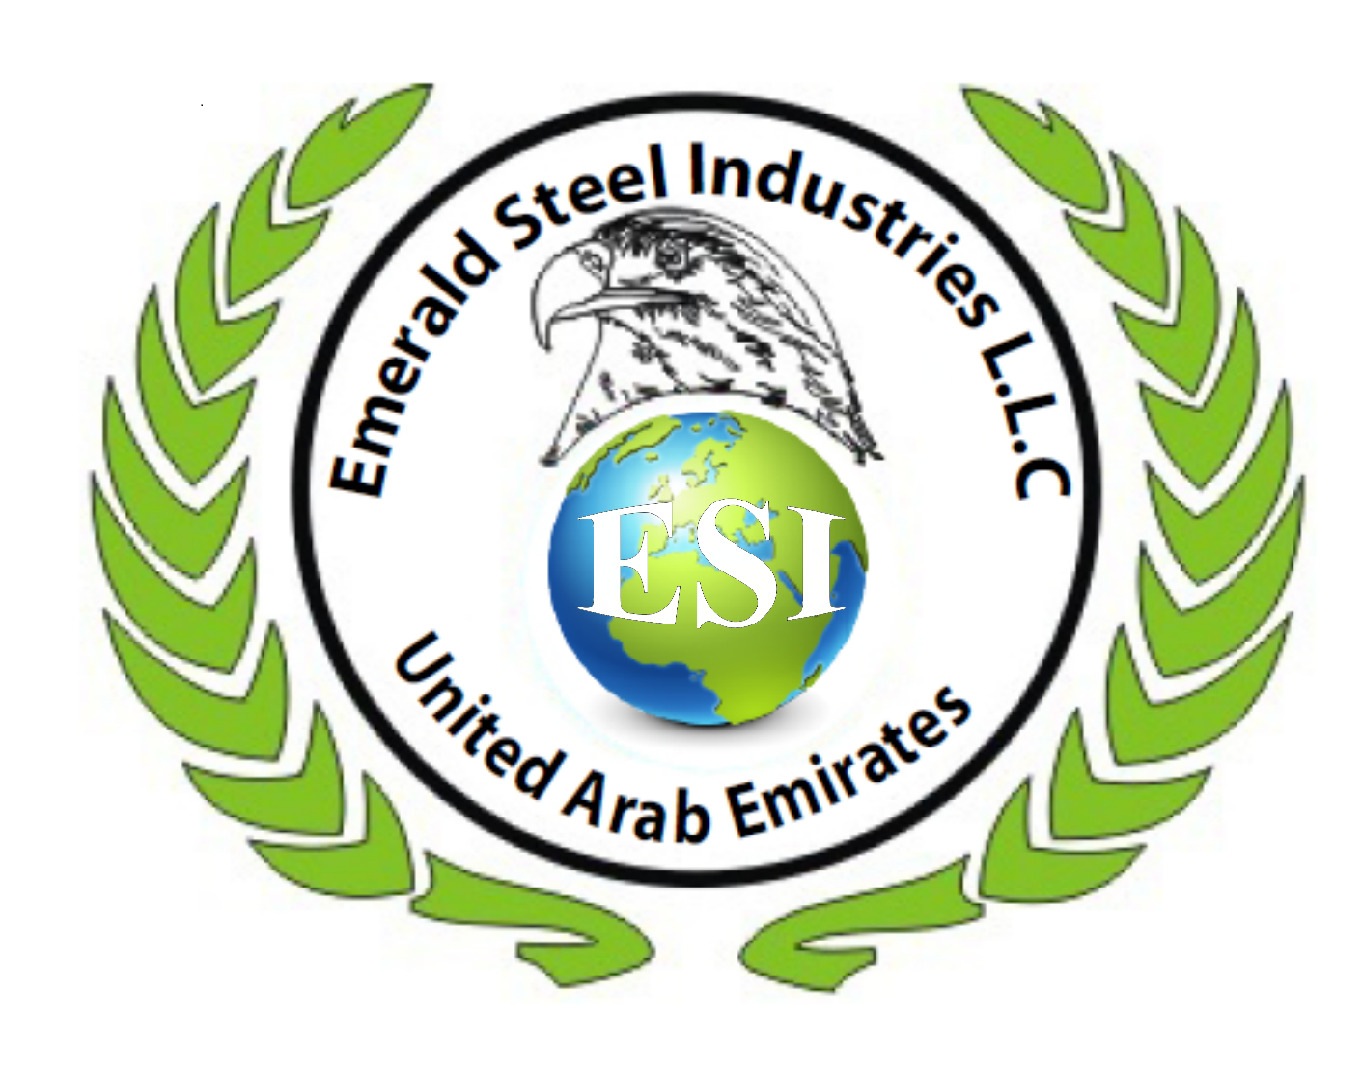 Emerald Steel Industries